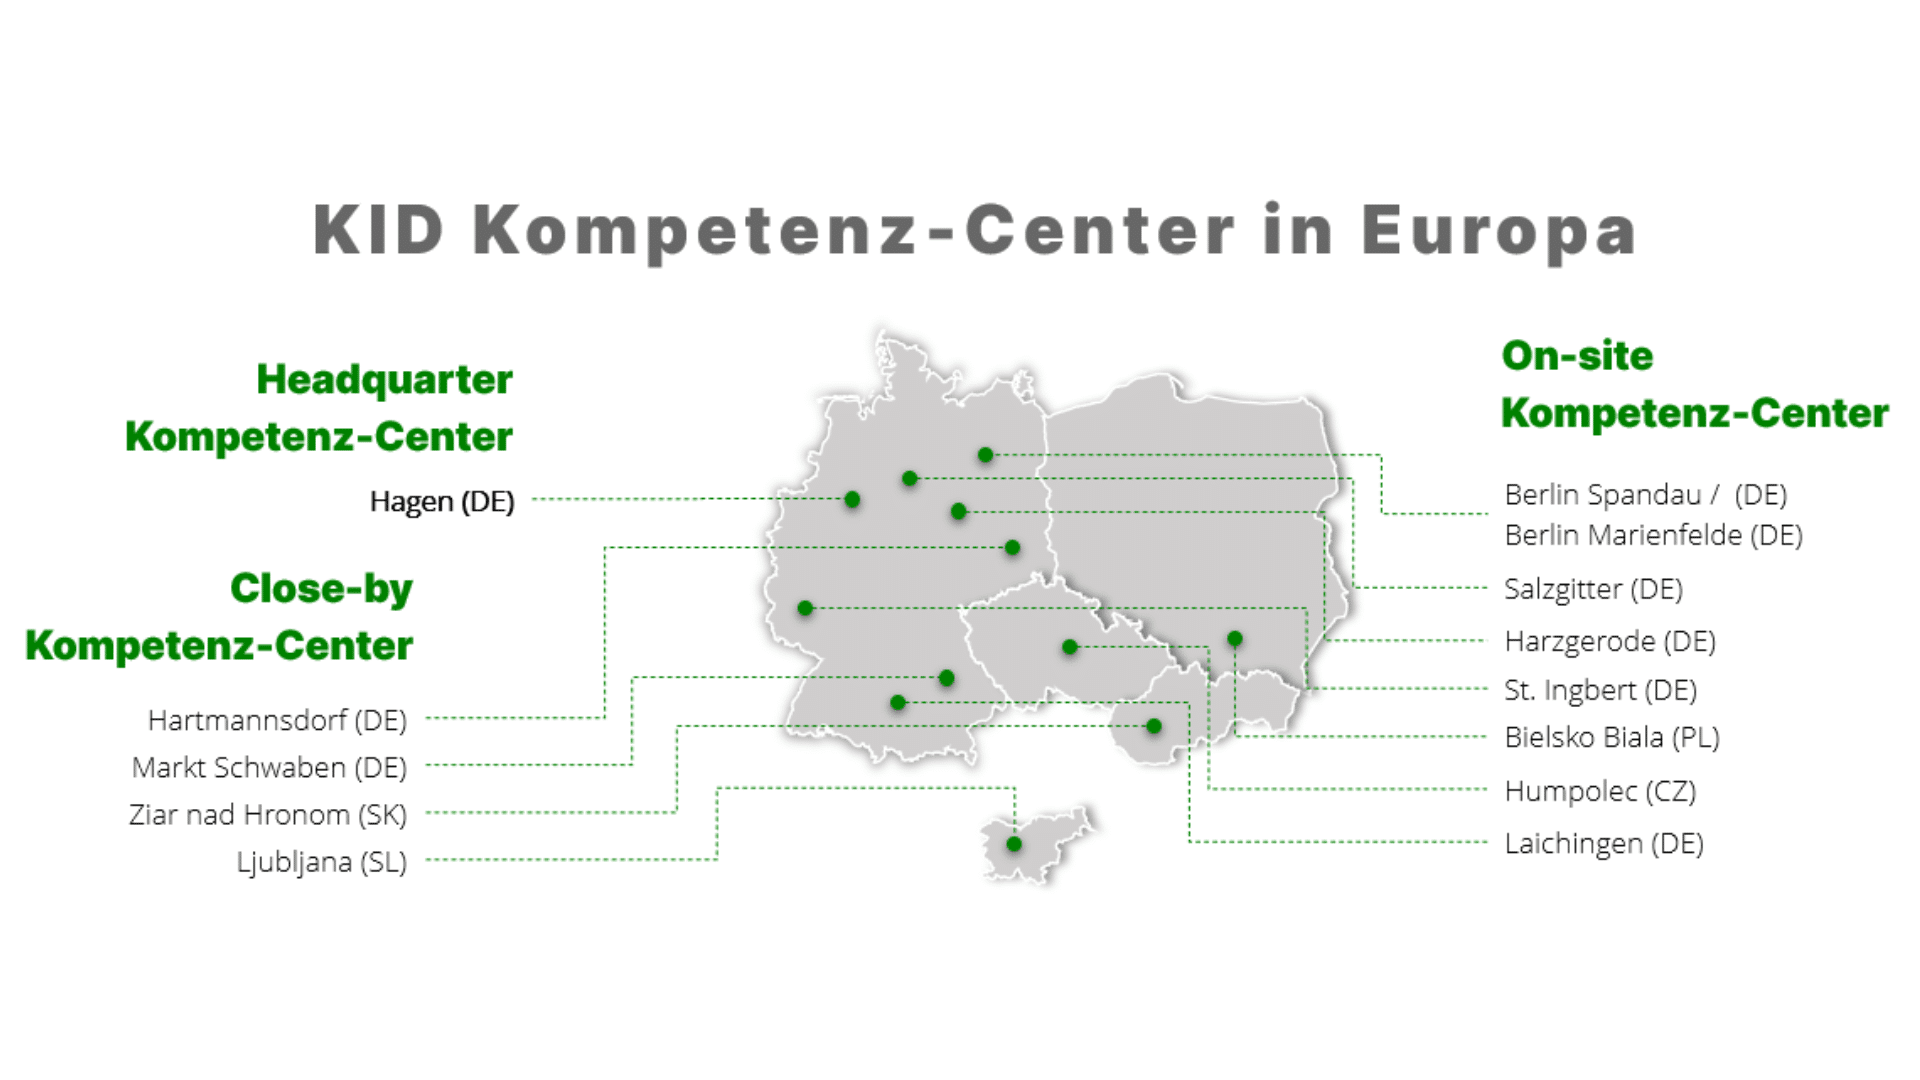 Kompetenz-Center-der-KiD-Impraegnier-und-Dichttechnik-GmbH-mit-Hauptsitz-in-Hagen